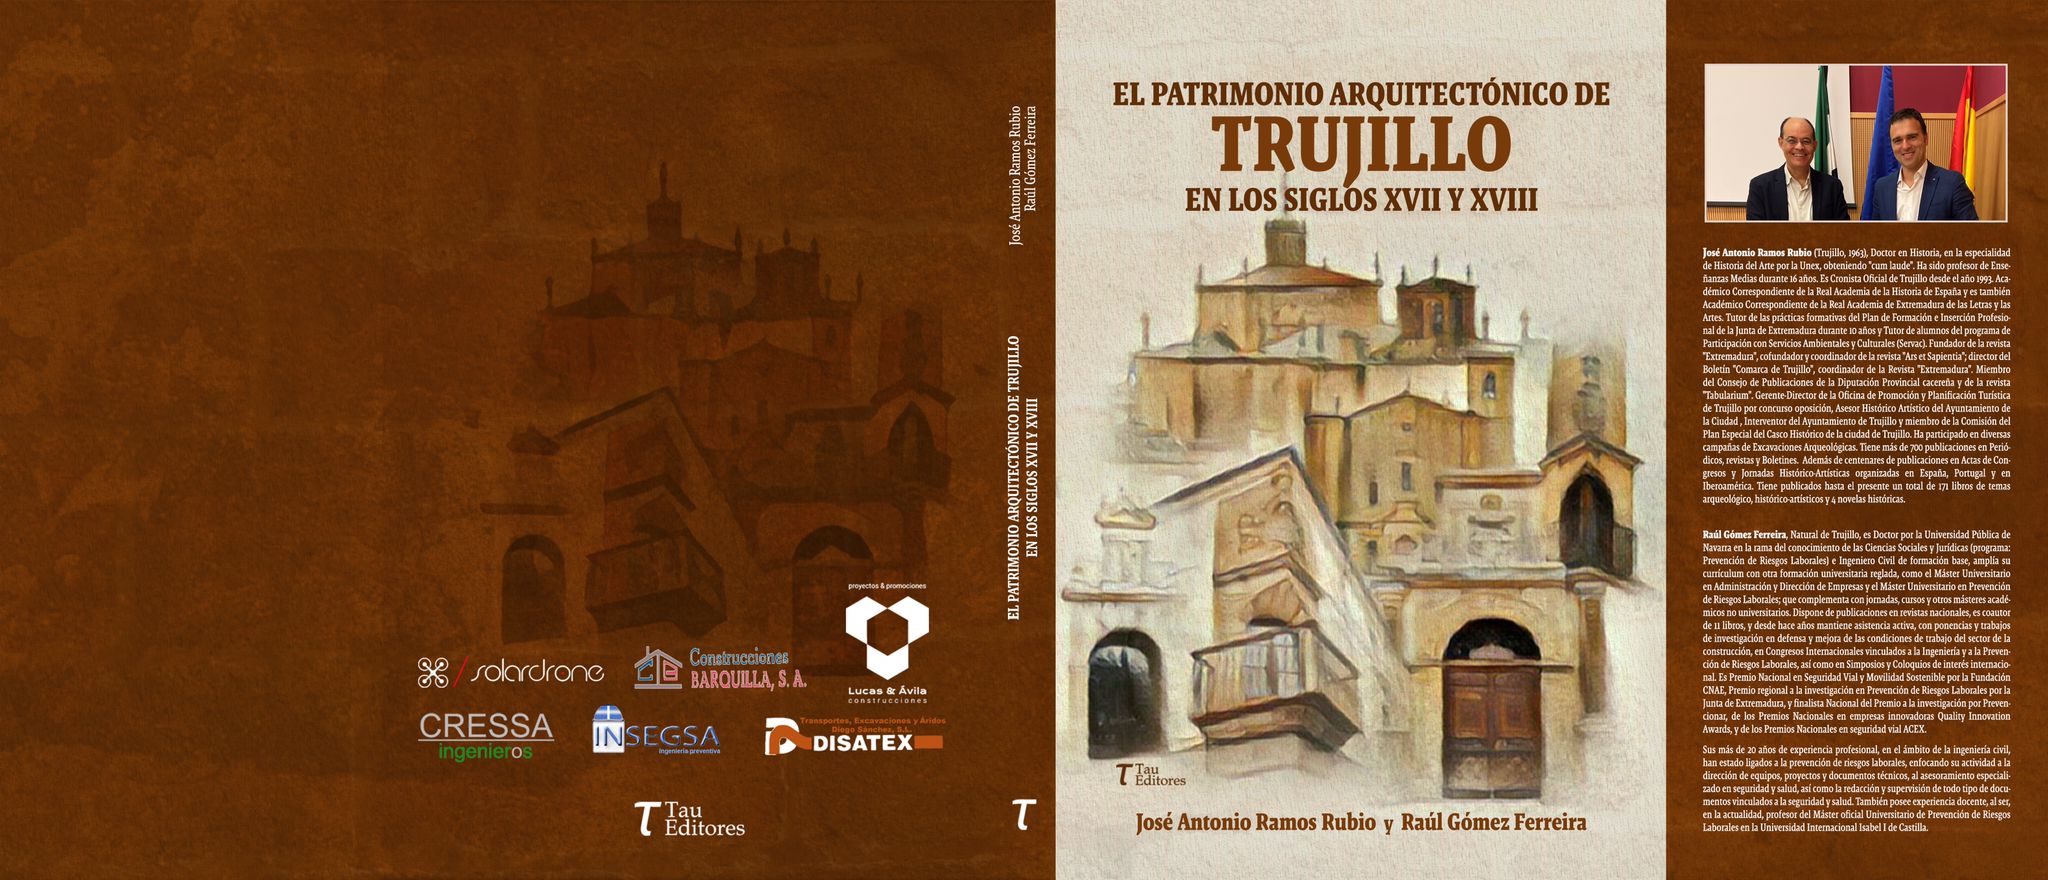 Colaboración en la edición y publicación del LIBRO “El patrimonio arquitectónico de Trujillo en los siglos XVII y XVIII”